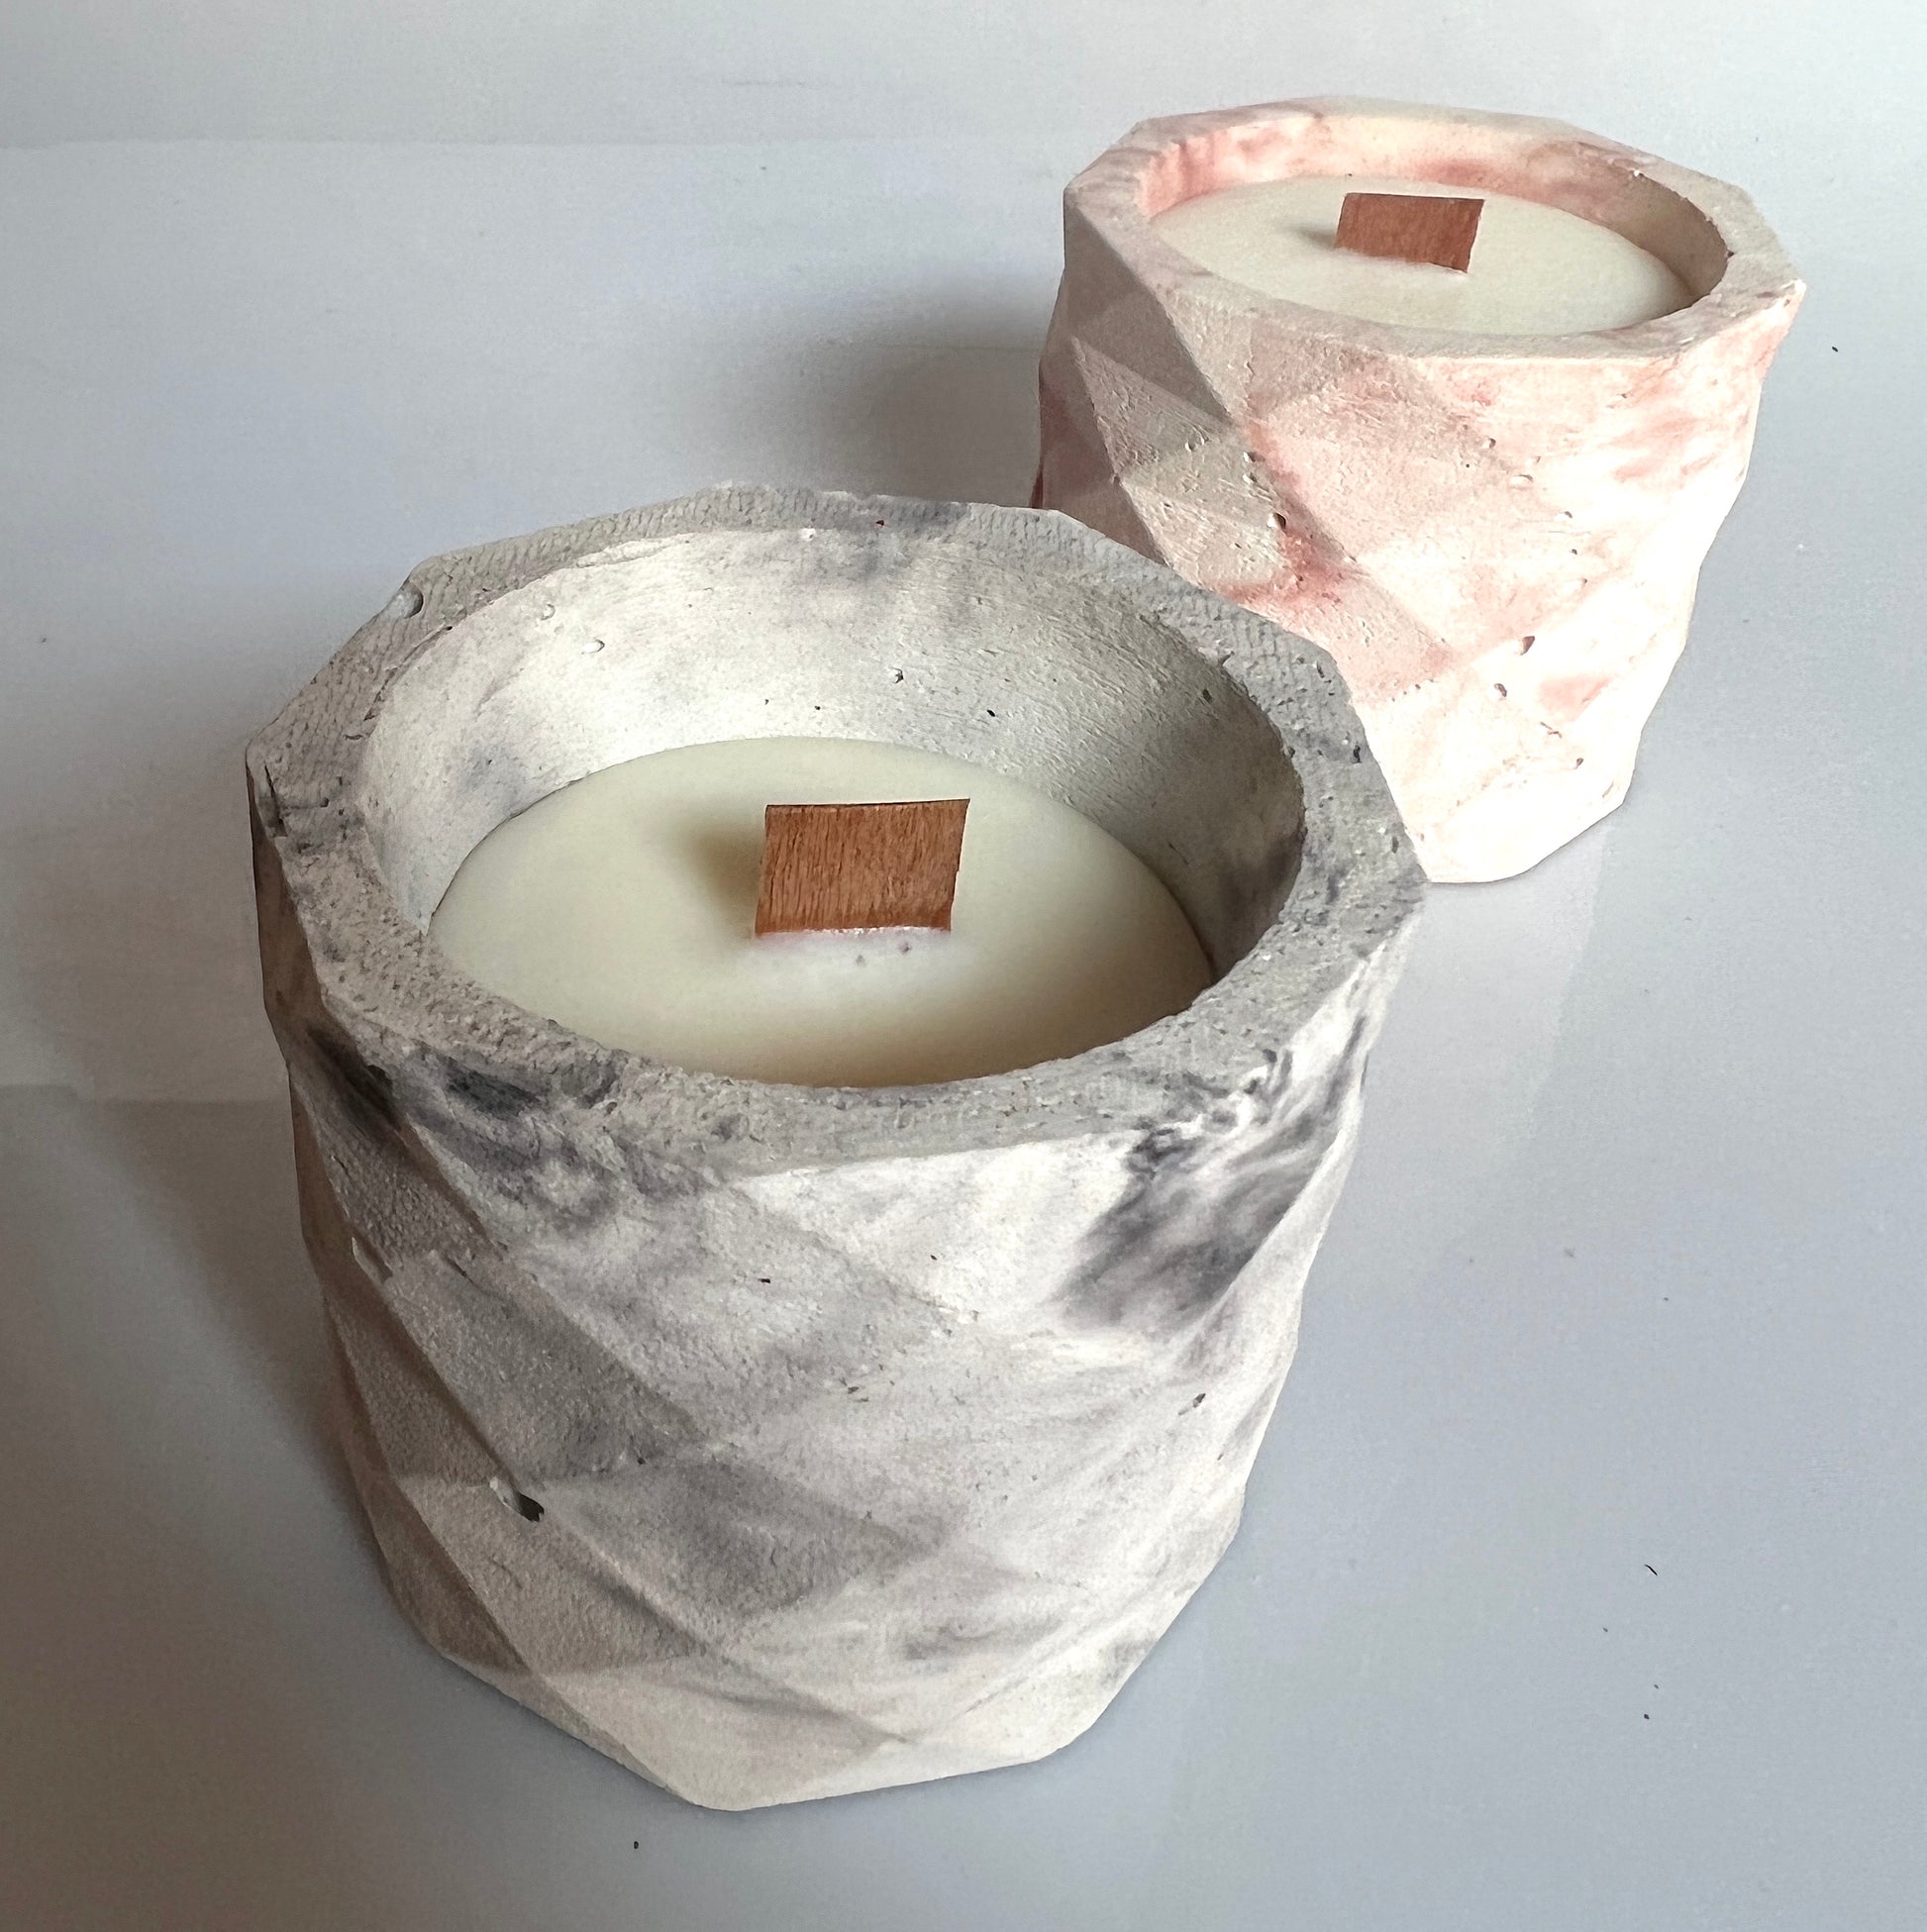 candela Penelope in cemento e cera di soia profumata con oli essenziali naturali colore marmorizzato risa e grigio 